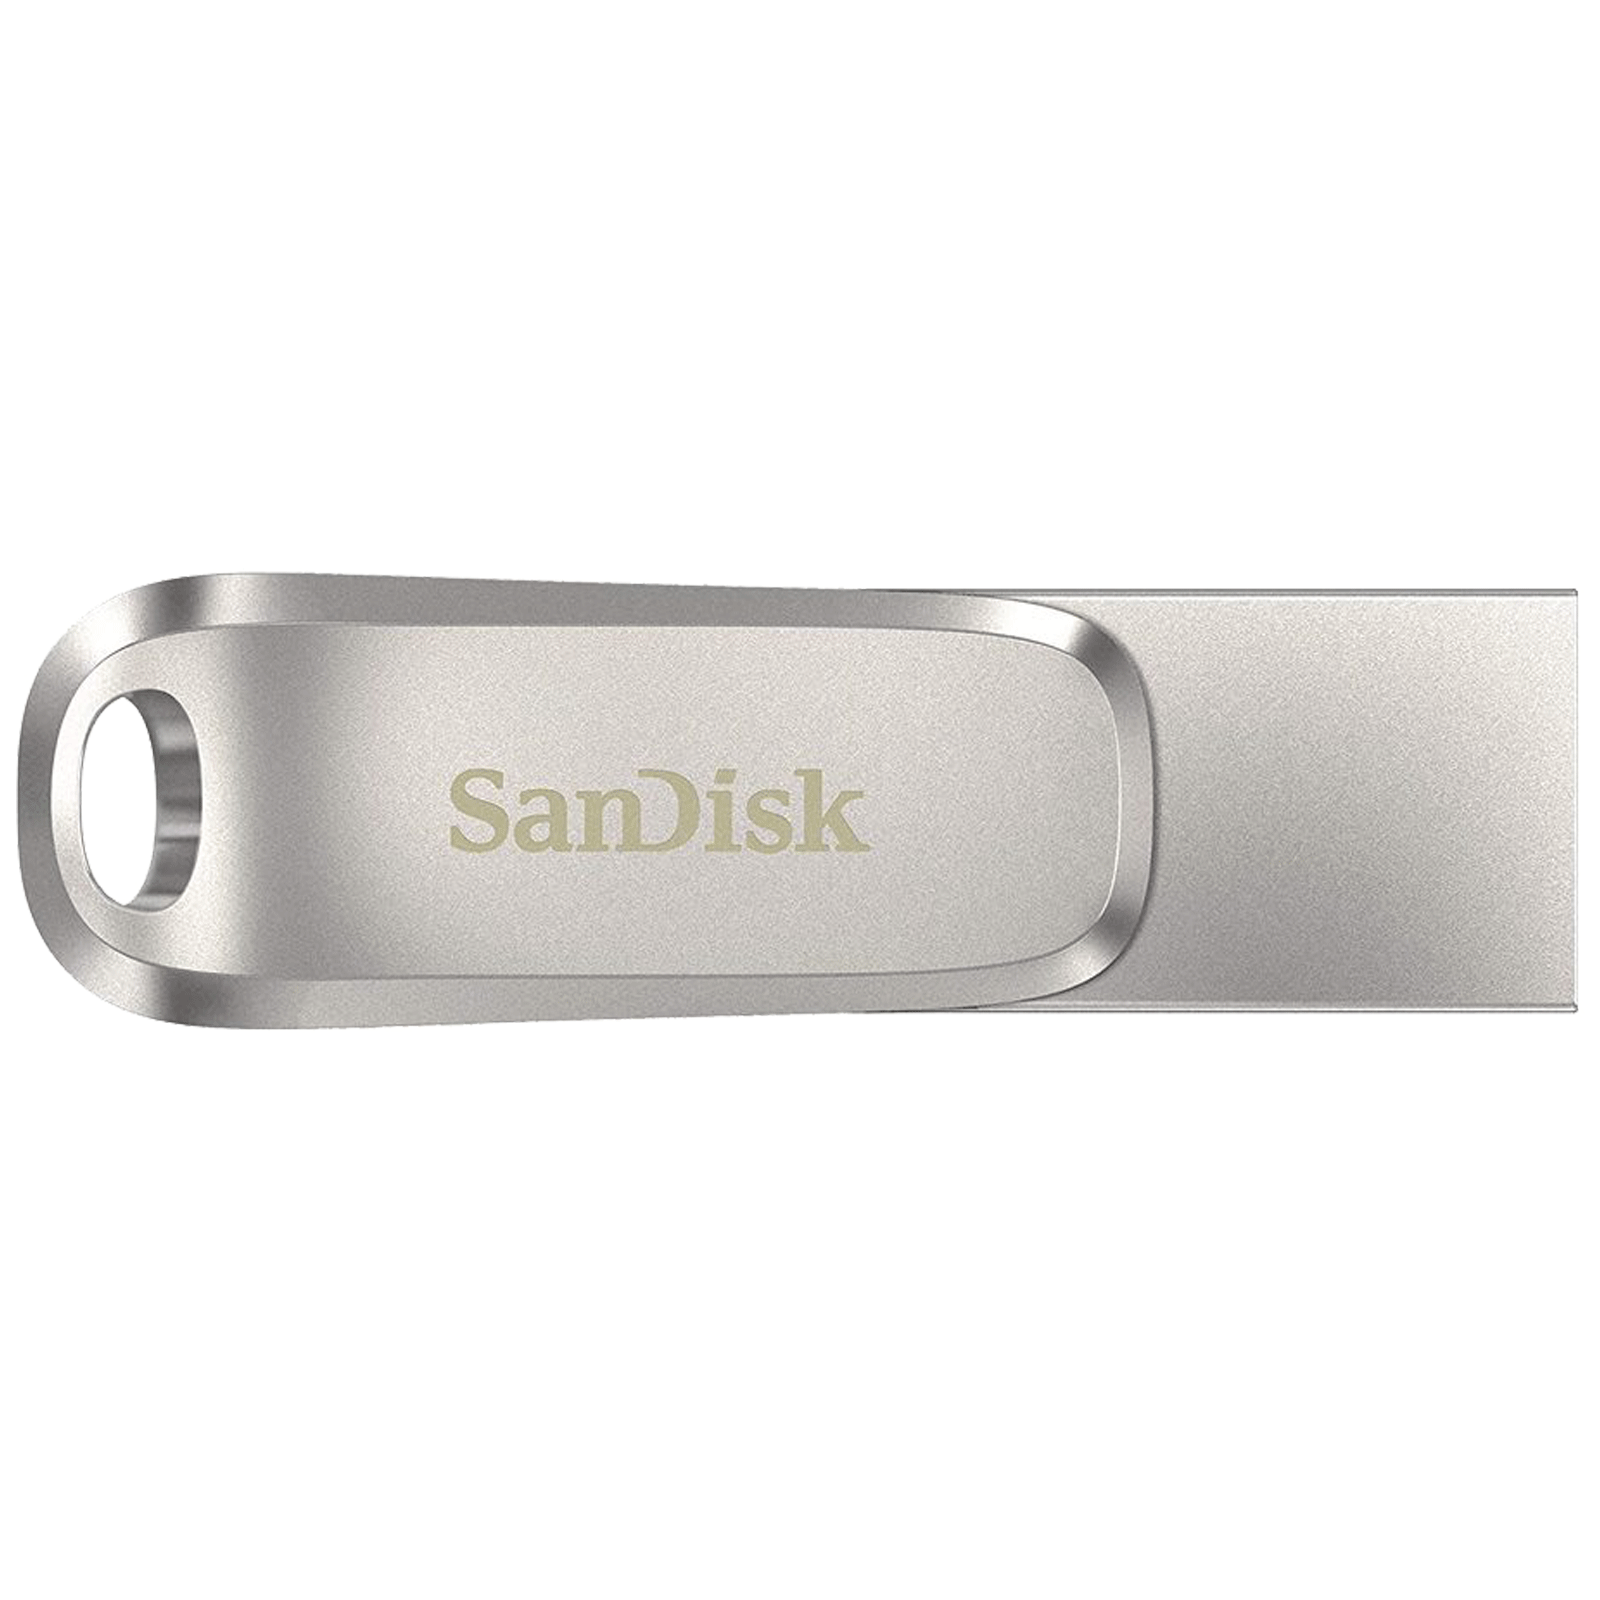 32Go clé USB-3.0-SanDisk